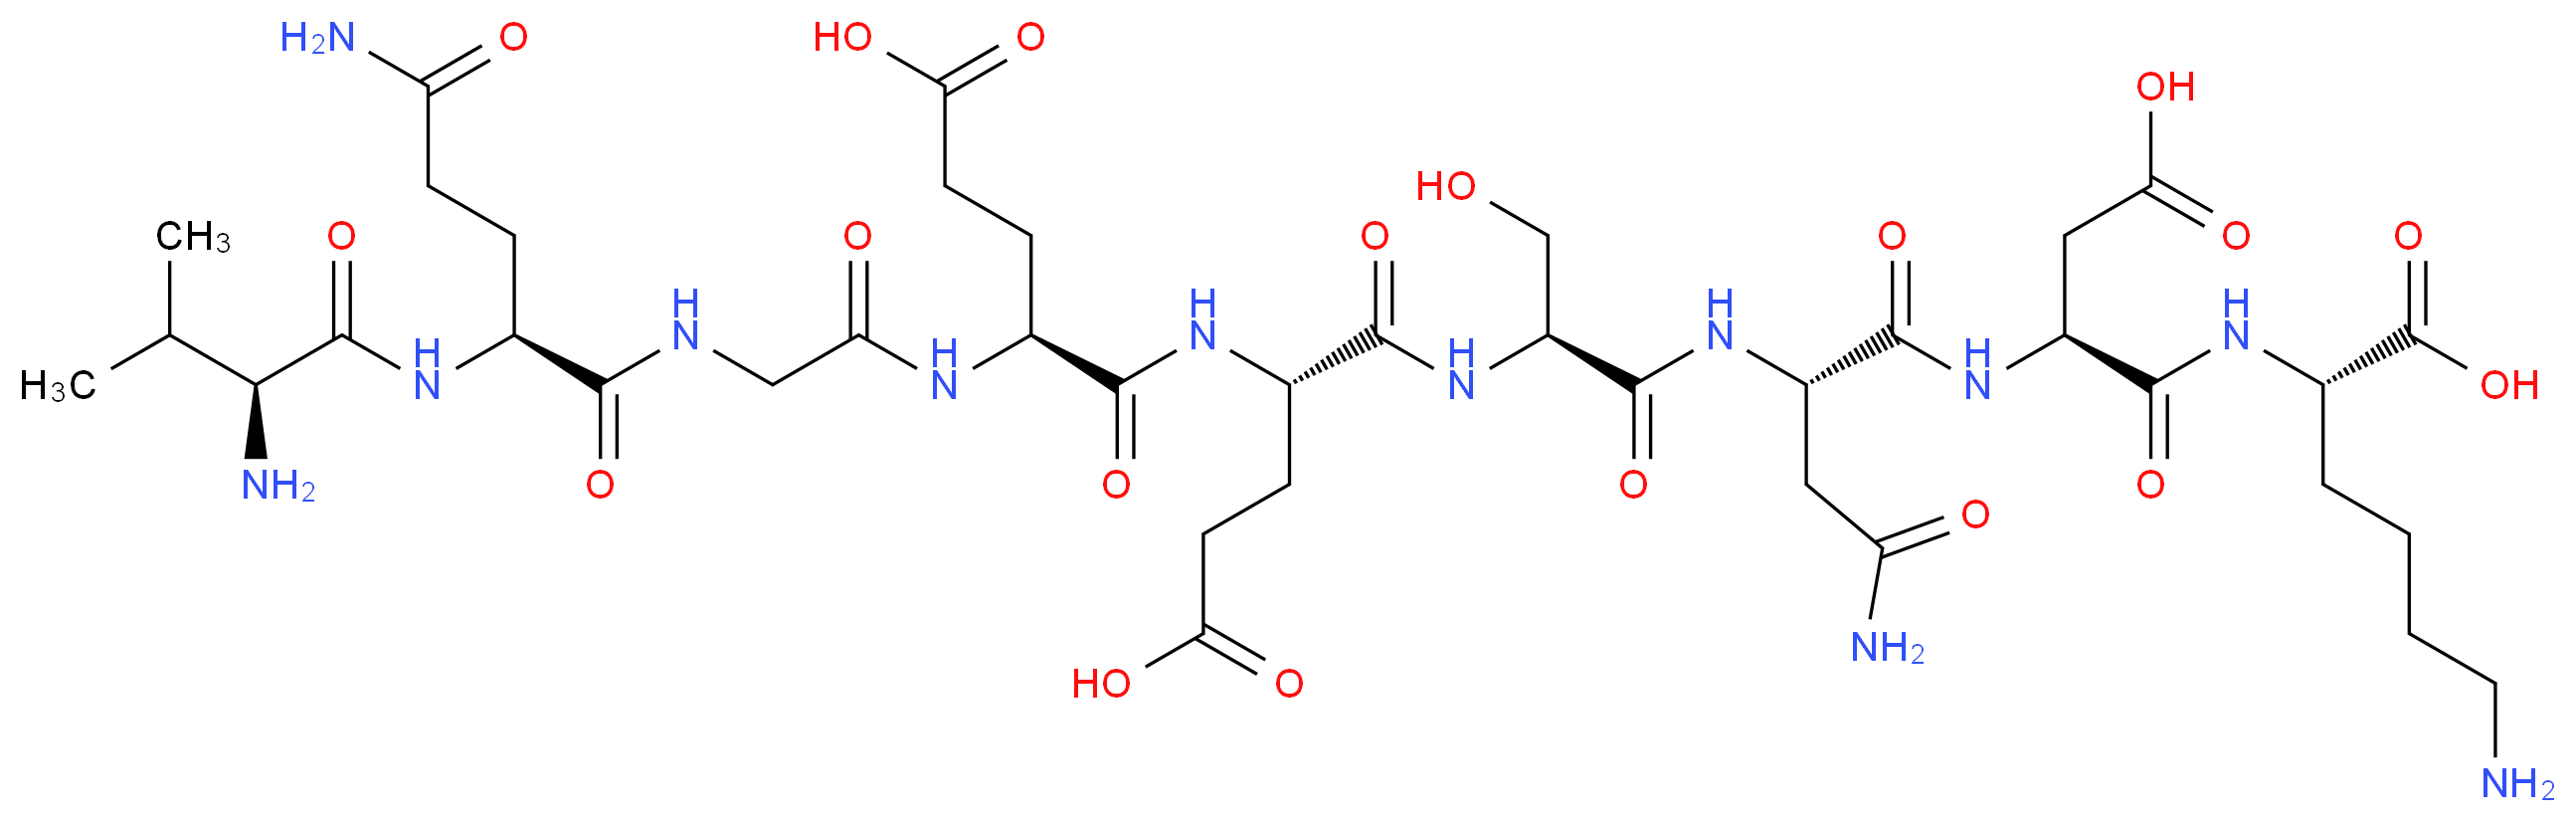 106021-96-9 molecular structure